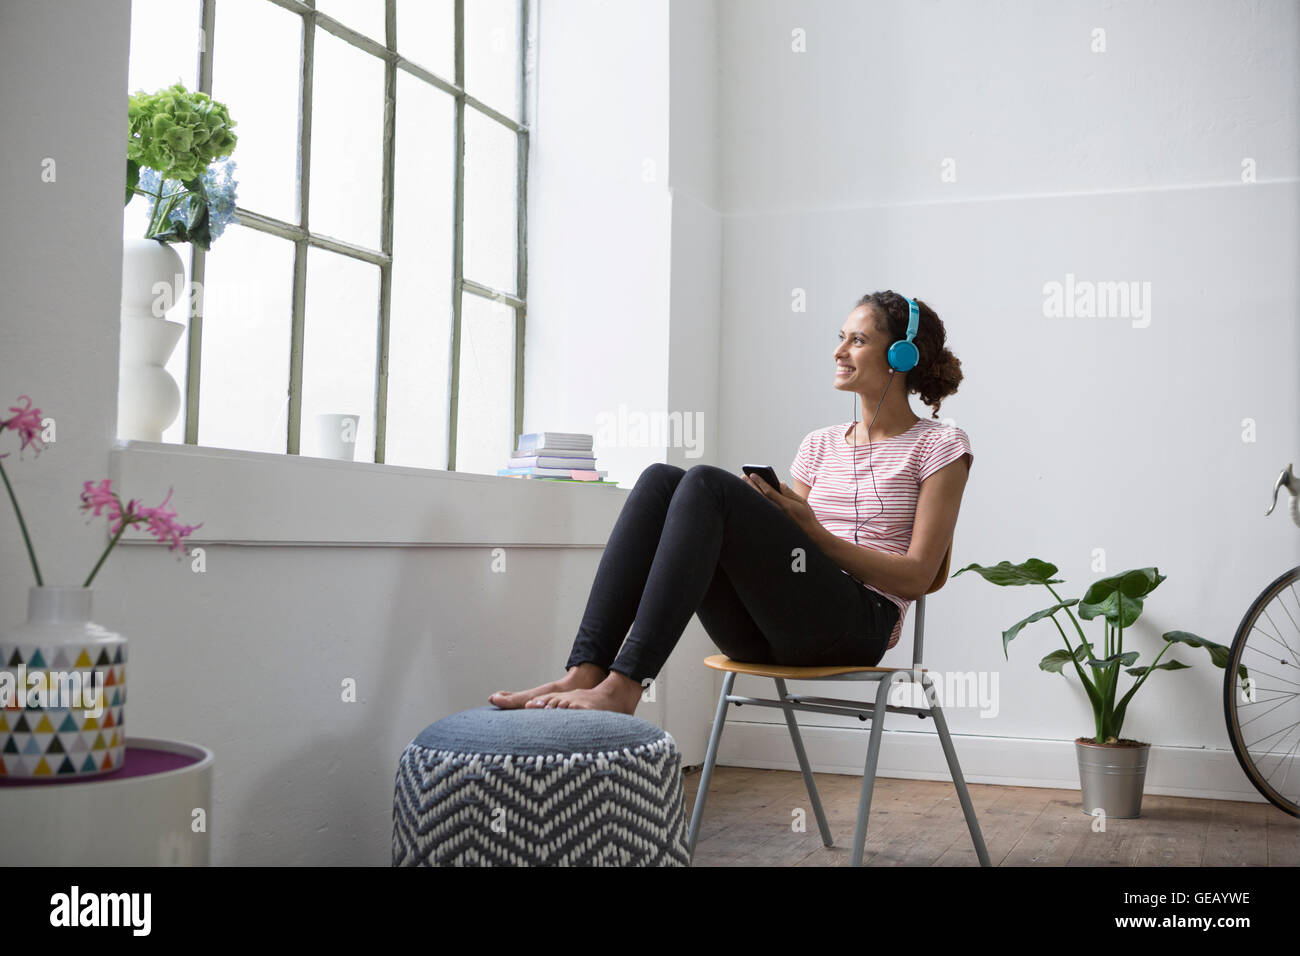 Junge Frau sitzt auf dem Stuhl Musik hören mit Kopfhörern Stockfoto